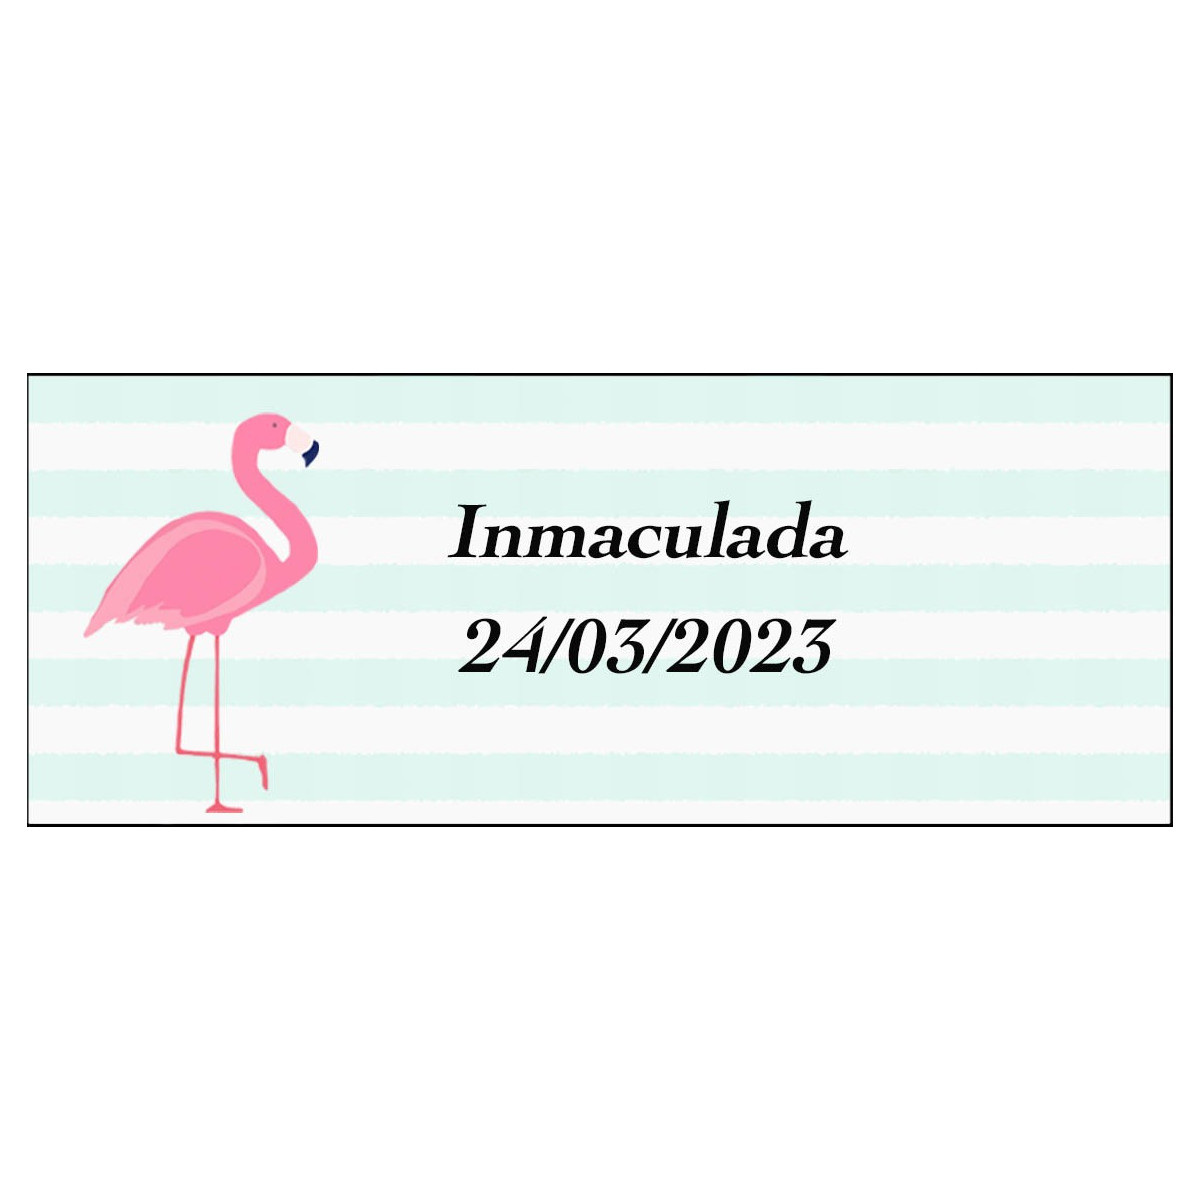 Sticker flamenco rectangulaire personnalisé pour le nom et la date